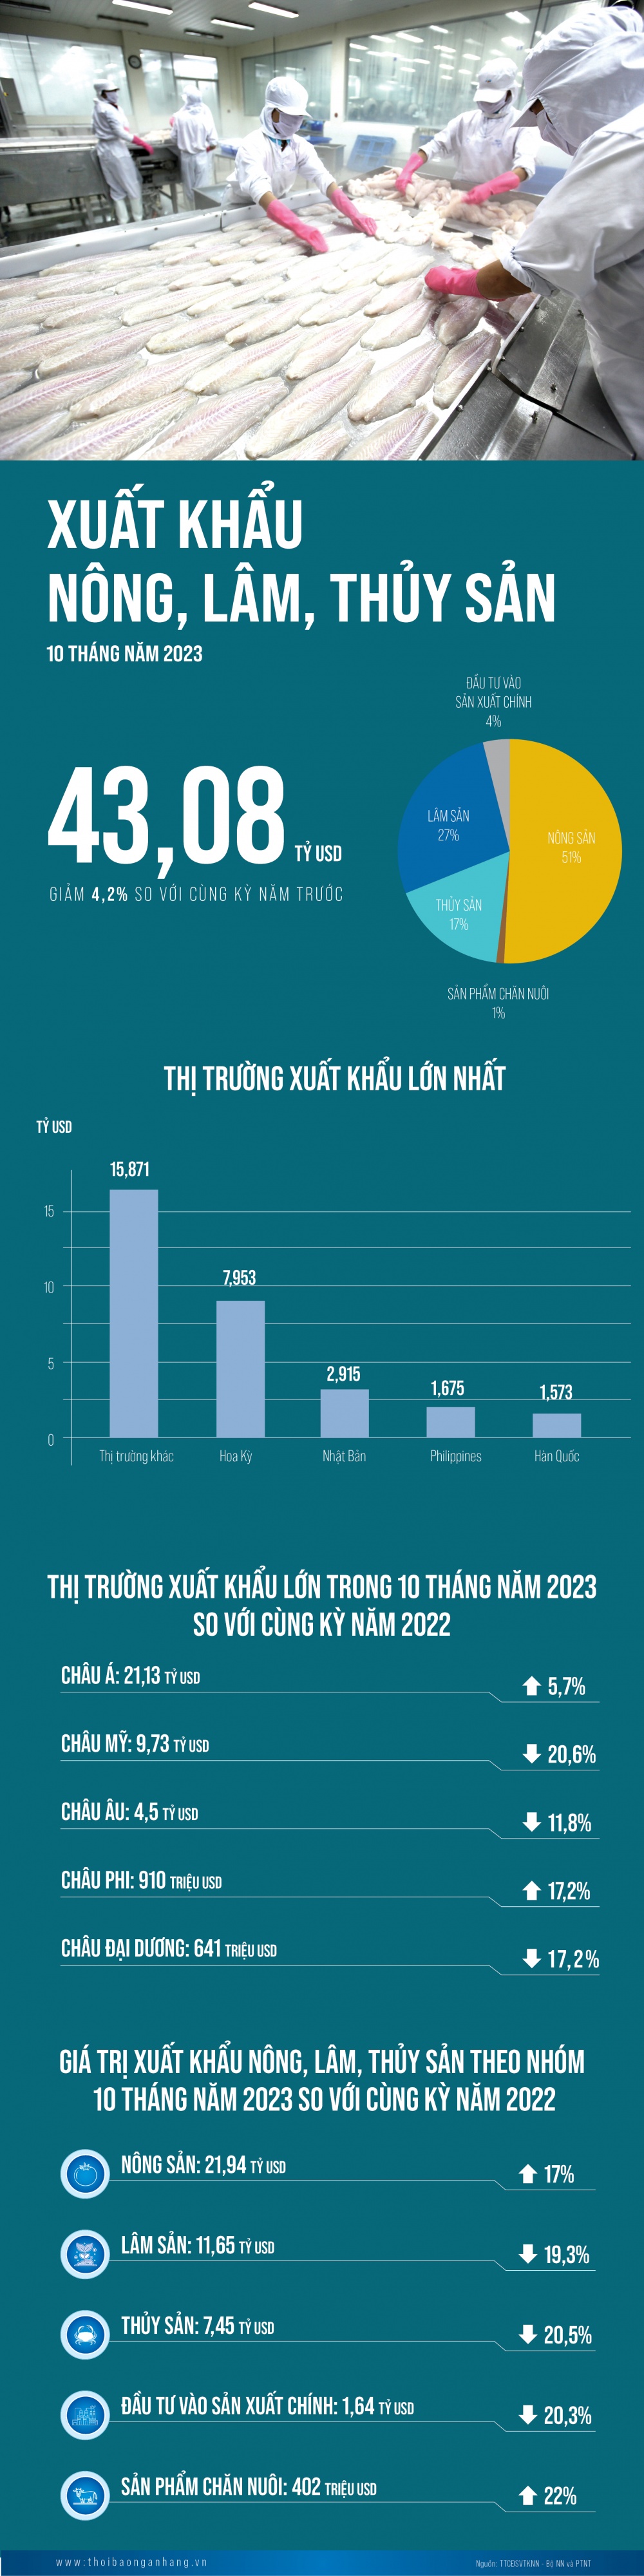 [Infographic] Xuất khẩu nông, lâm, thủy sản 10 tháng năm 2023